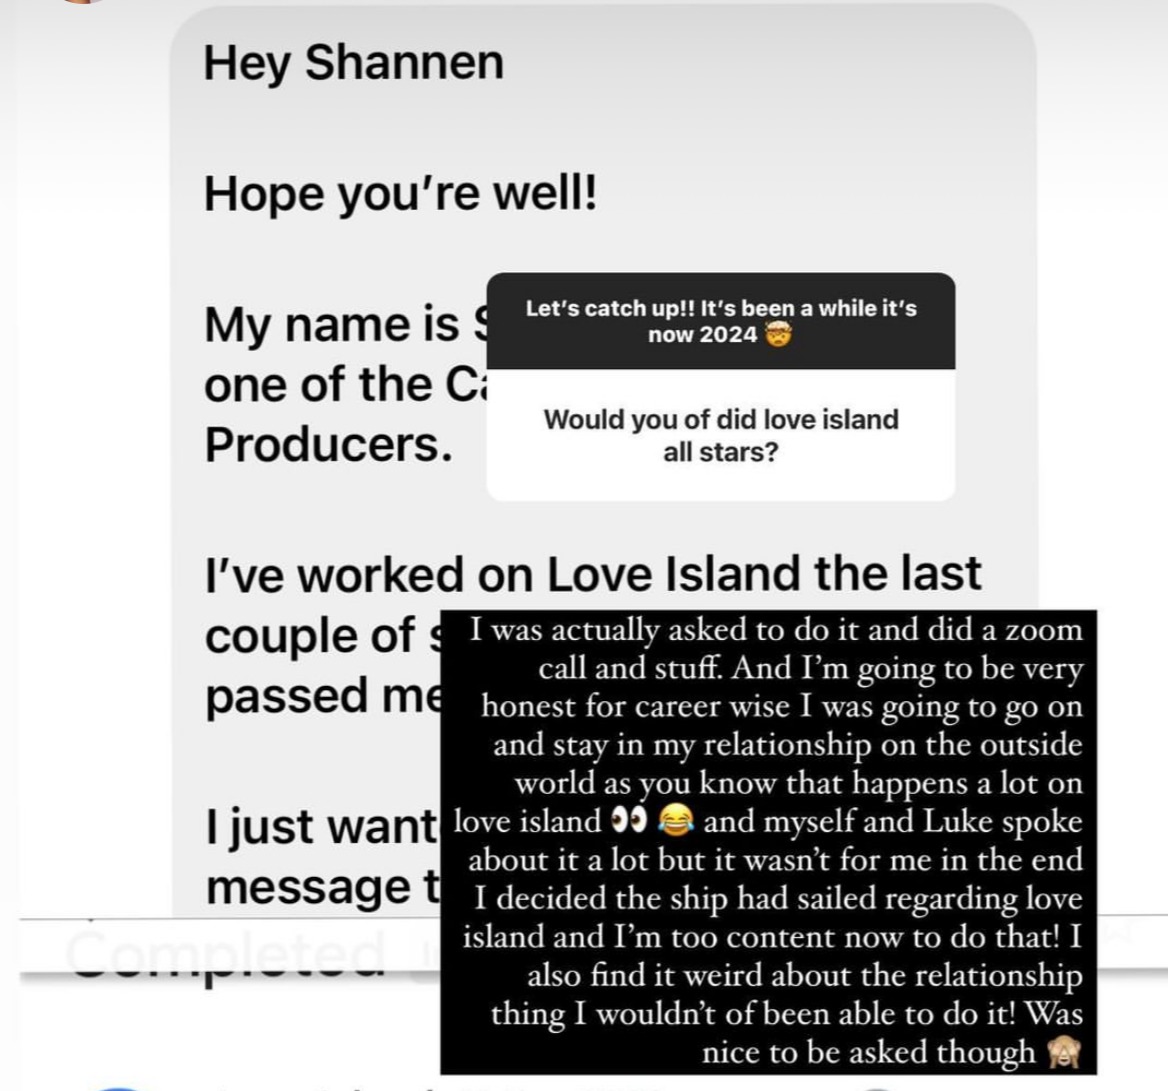 Sie teilte die Nachrichten, die sie von den Produzenten von Love Island erhalten hatte